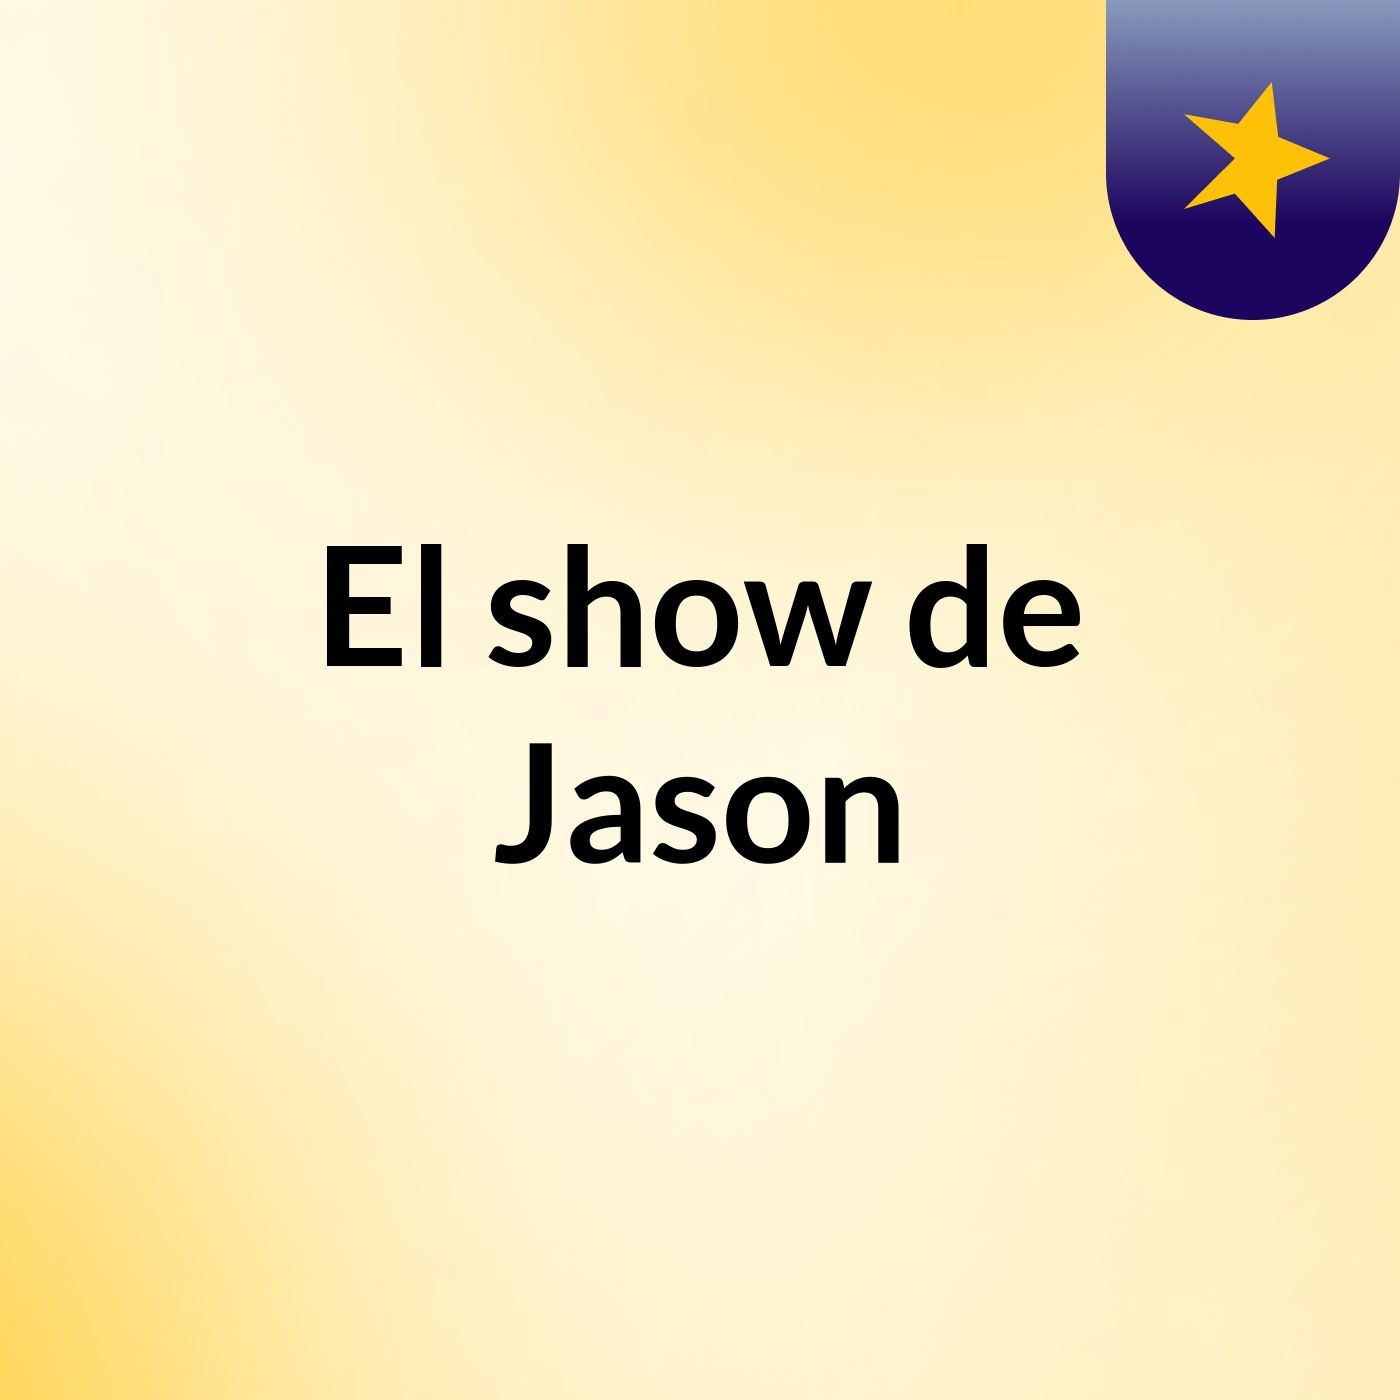 El show de Jason